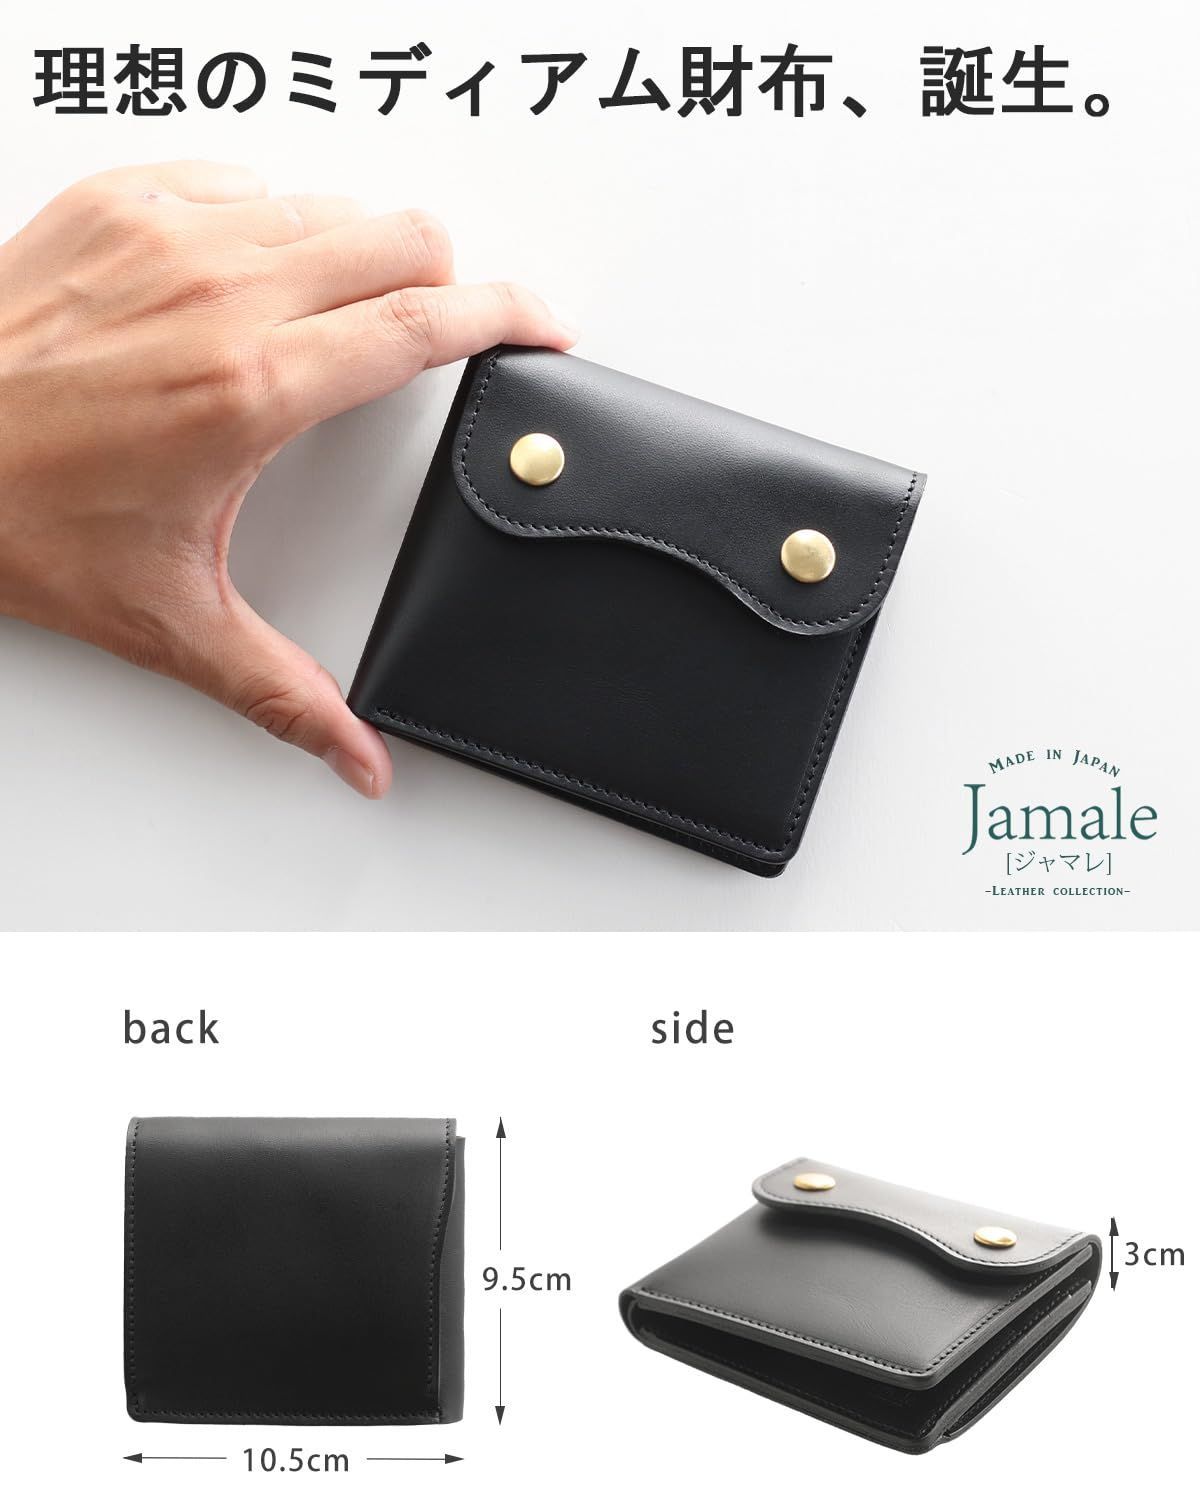 【色: レッド】Jamale 財布 メンズ 2つ折り 本革 レザー ミニ 二つ折